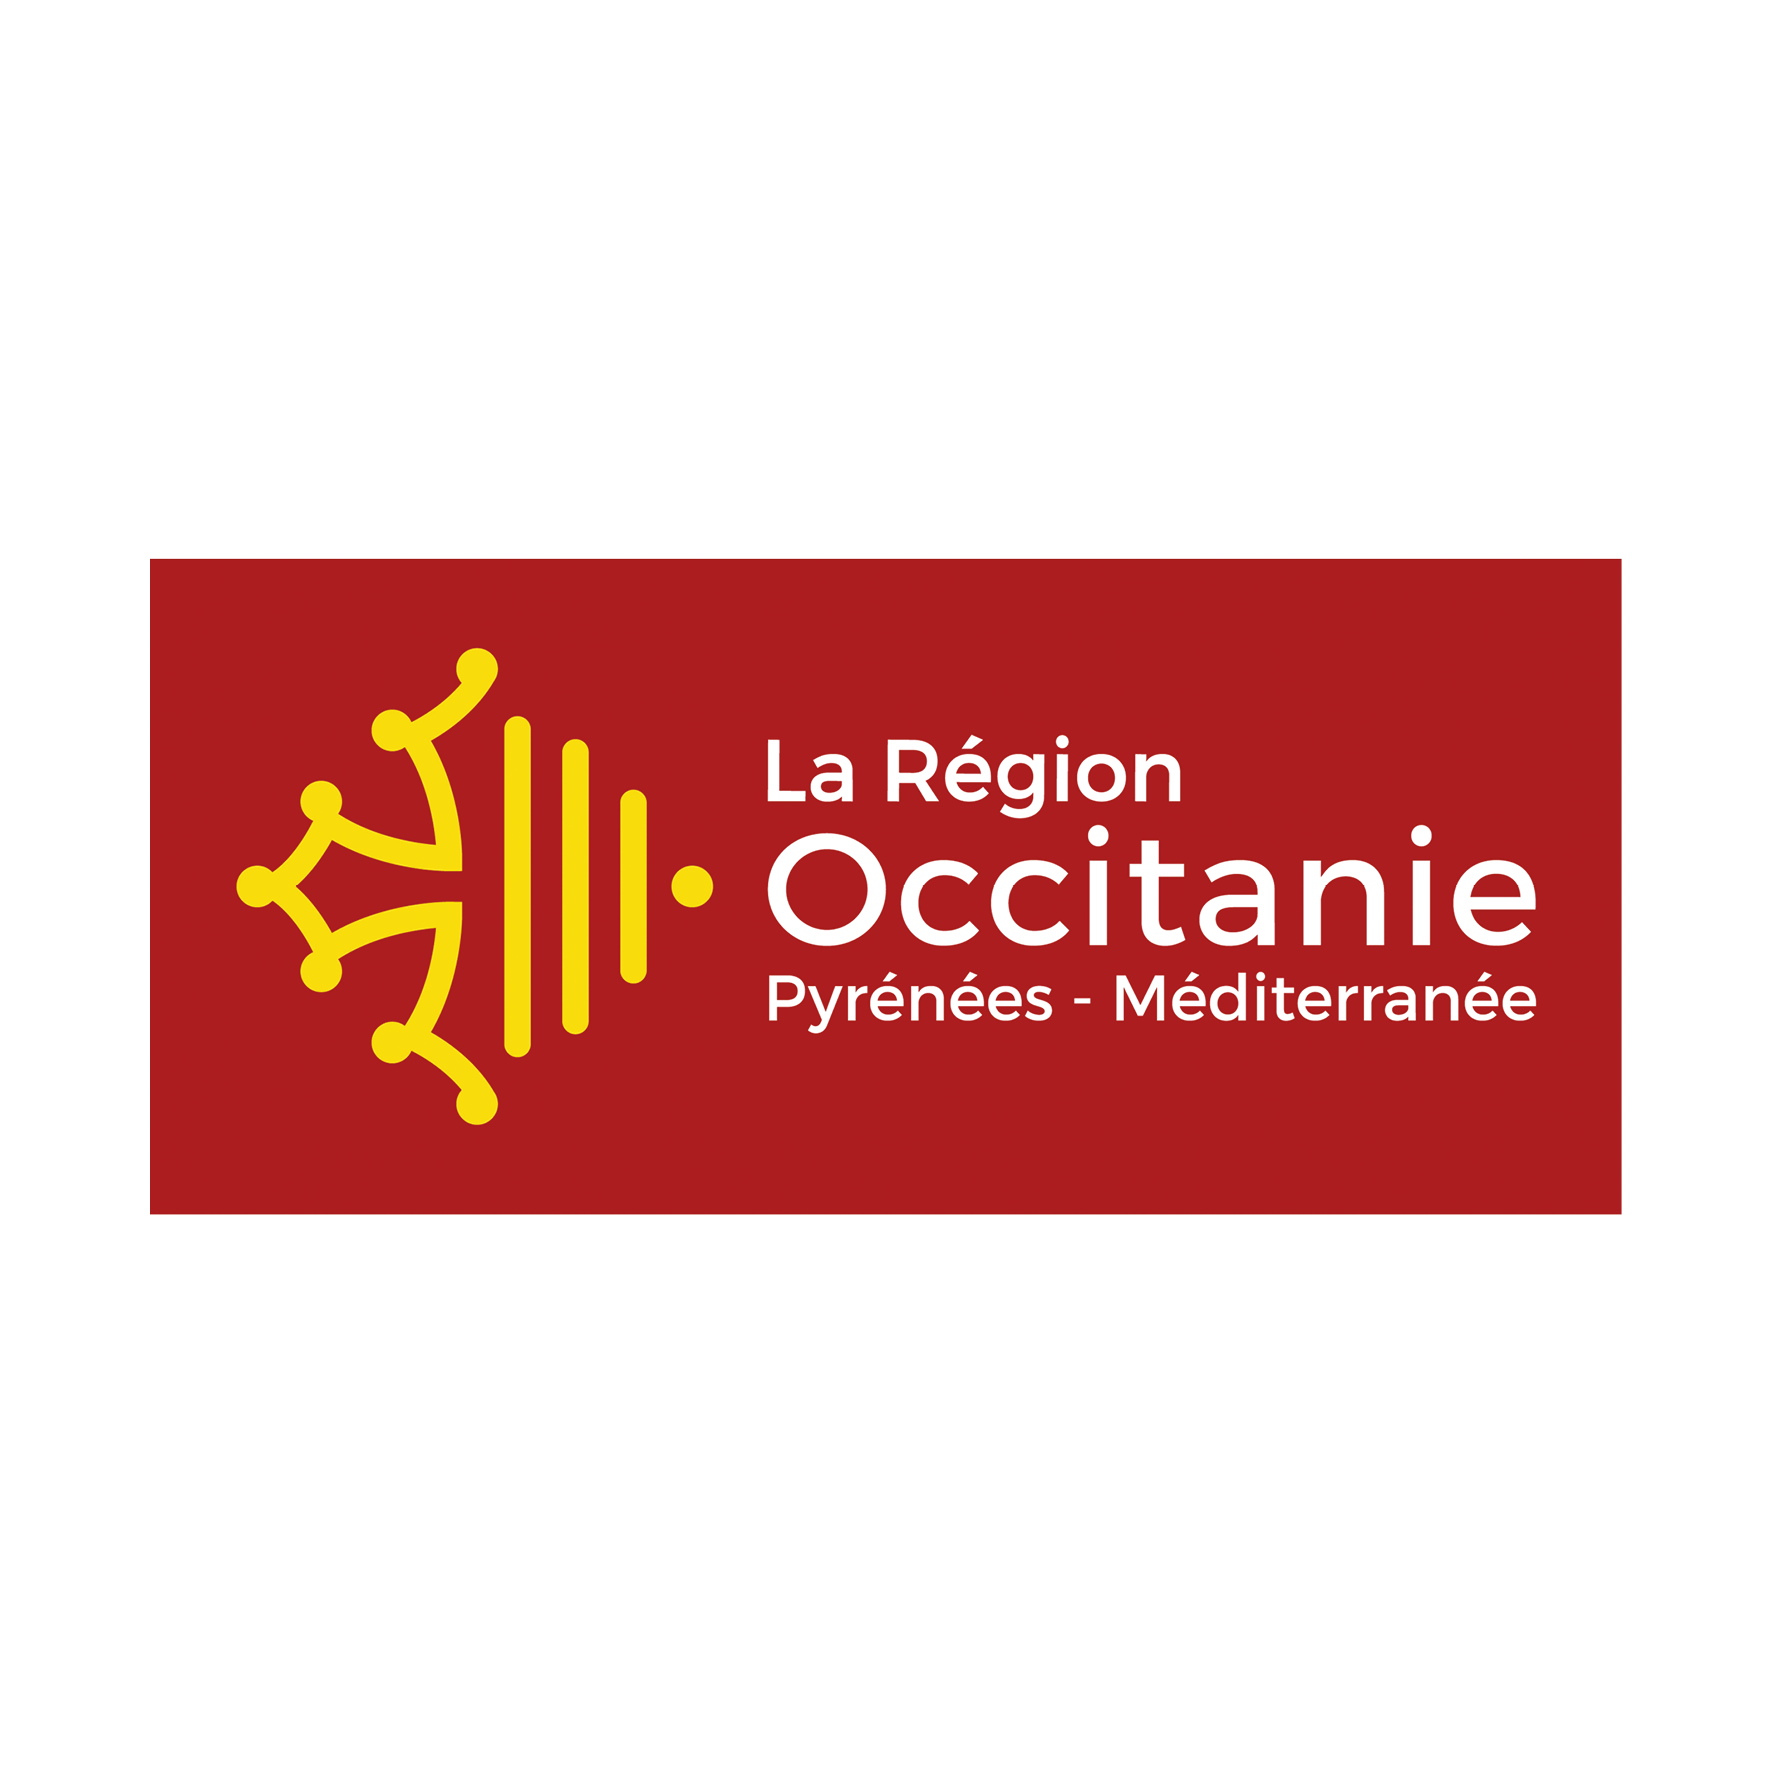 La Région Occitanie